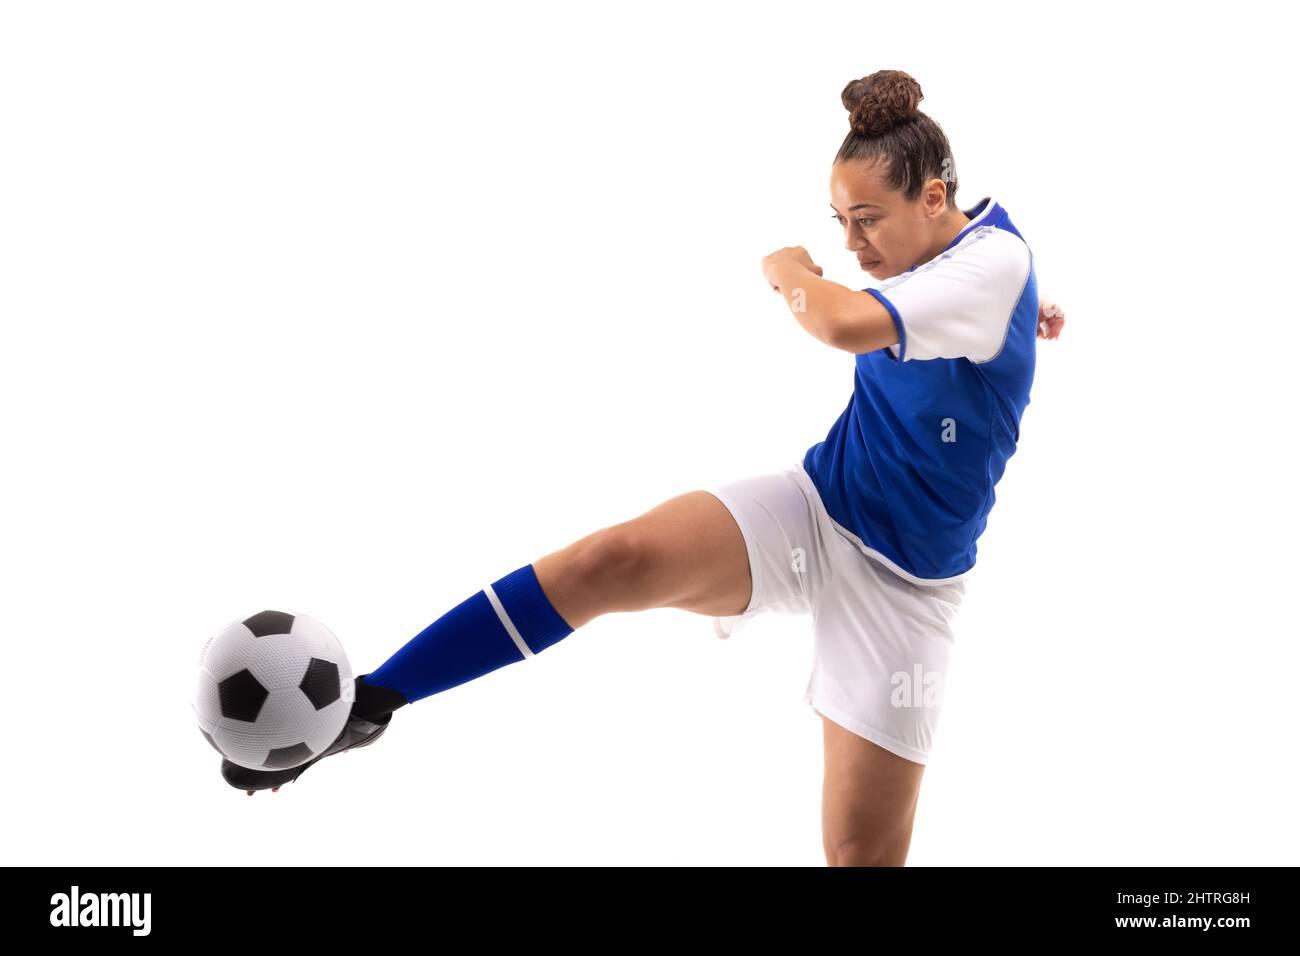 Die gesamte Länge der biracial junge Fußballspielerin tritt Fußball, während sie Fußball spielt Stockfoto